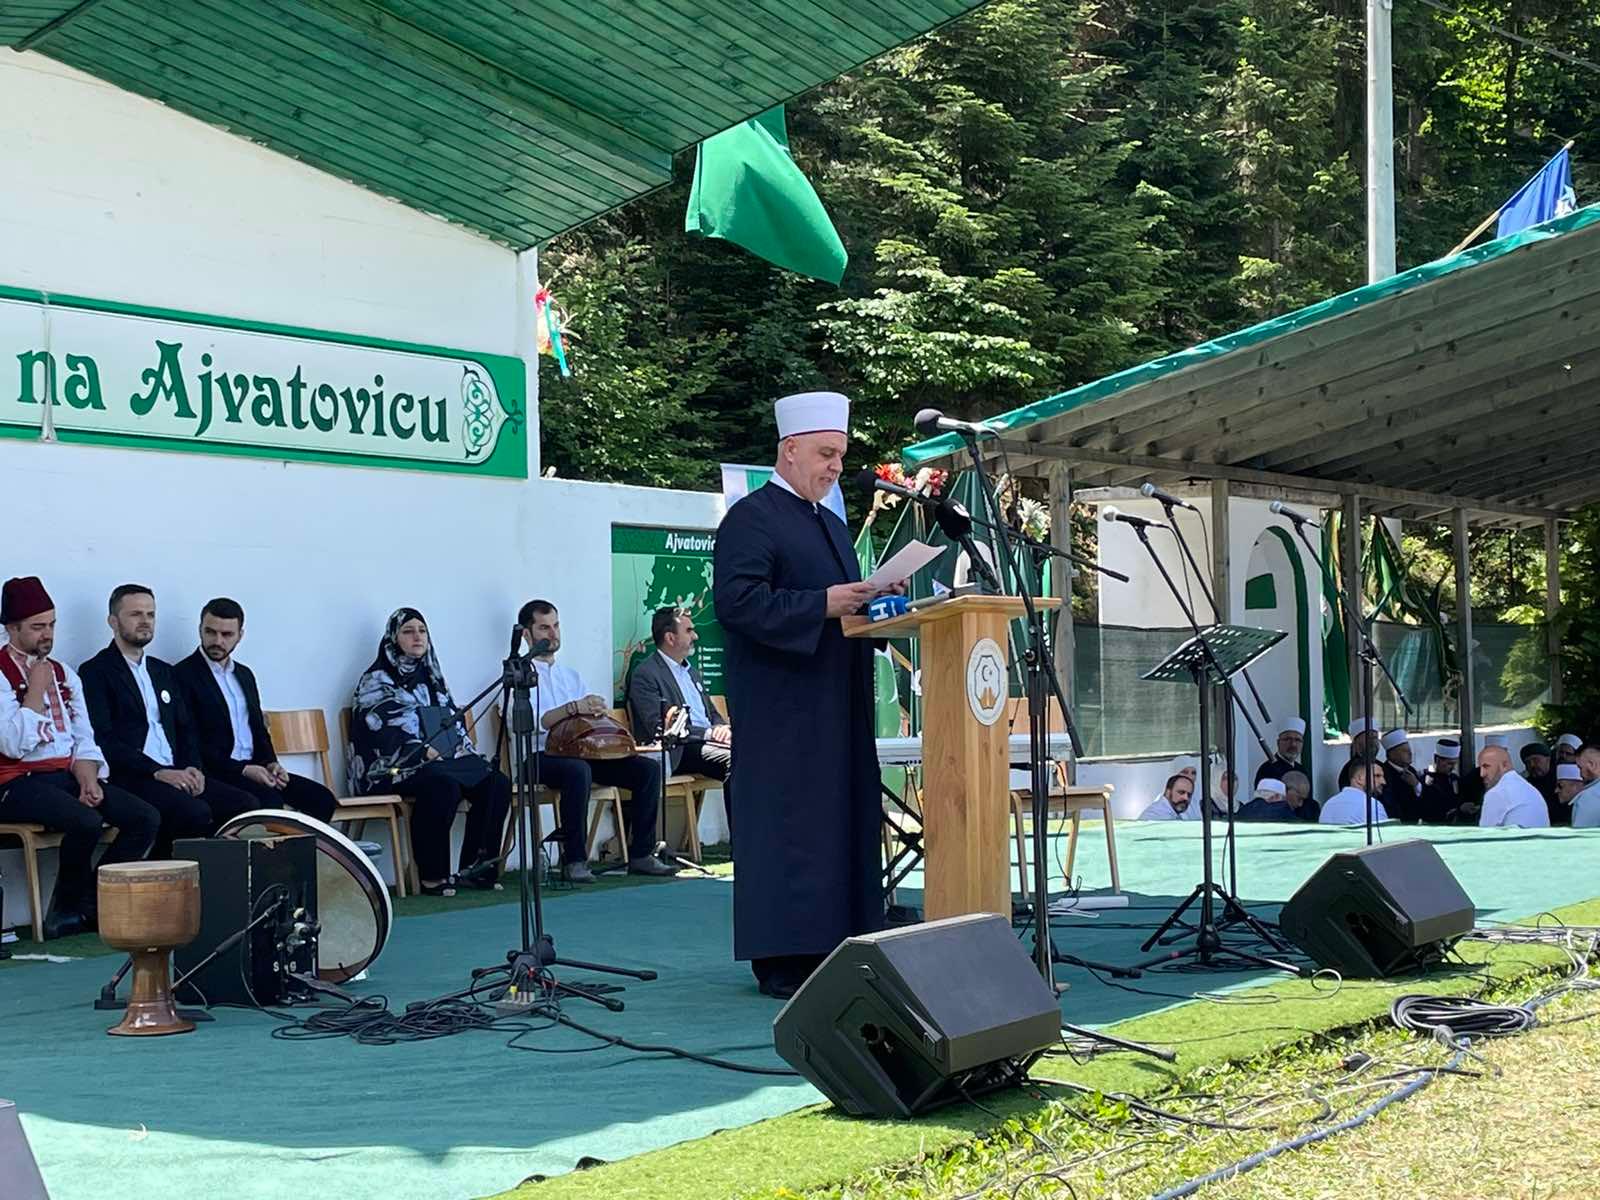 reisul-ulema Islamske zajednice u Bosni i Hercegovini Husein-ef. Kavazović - Avaz